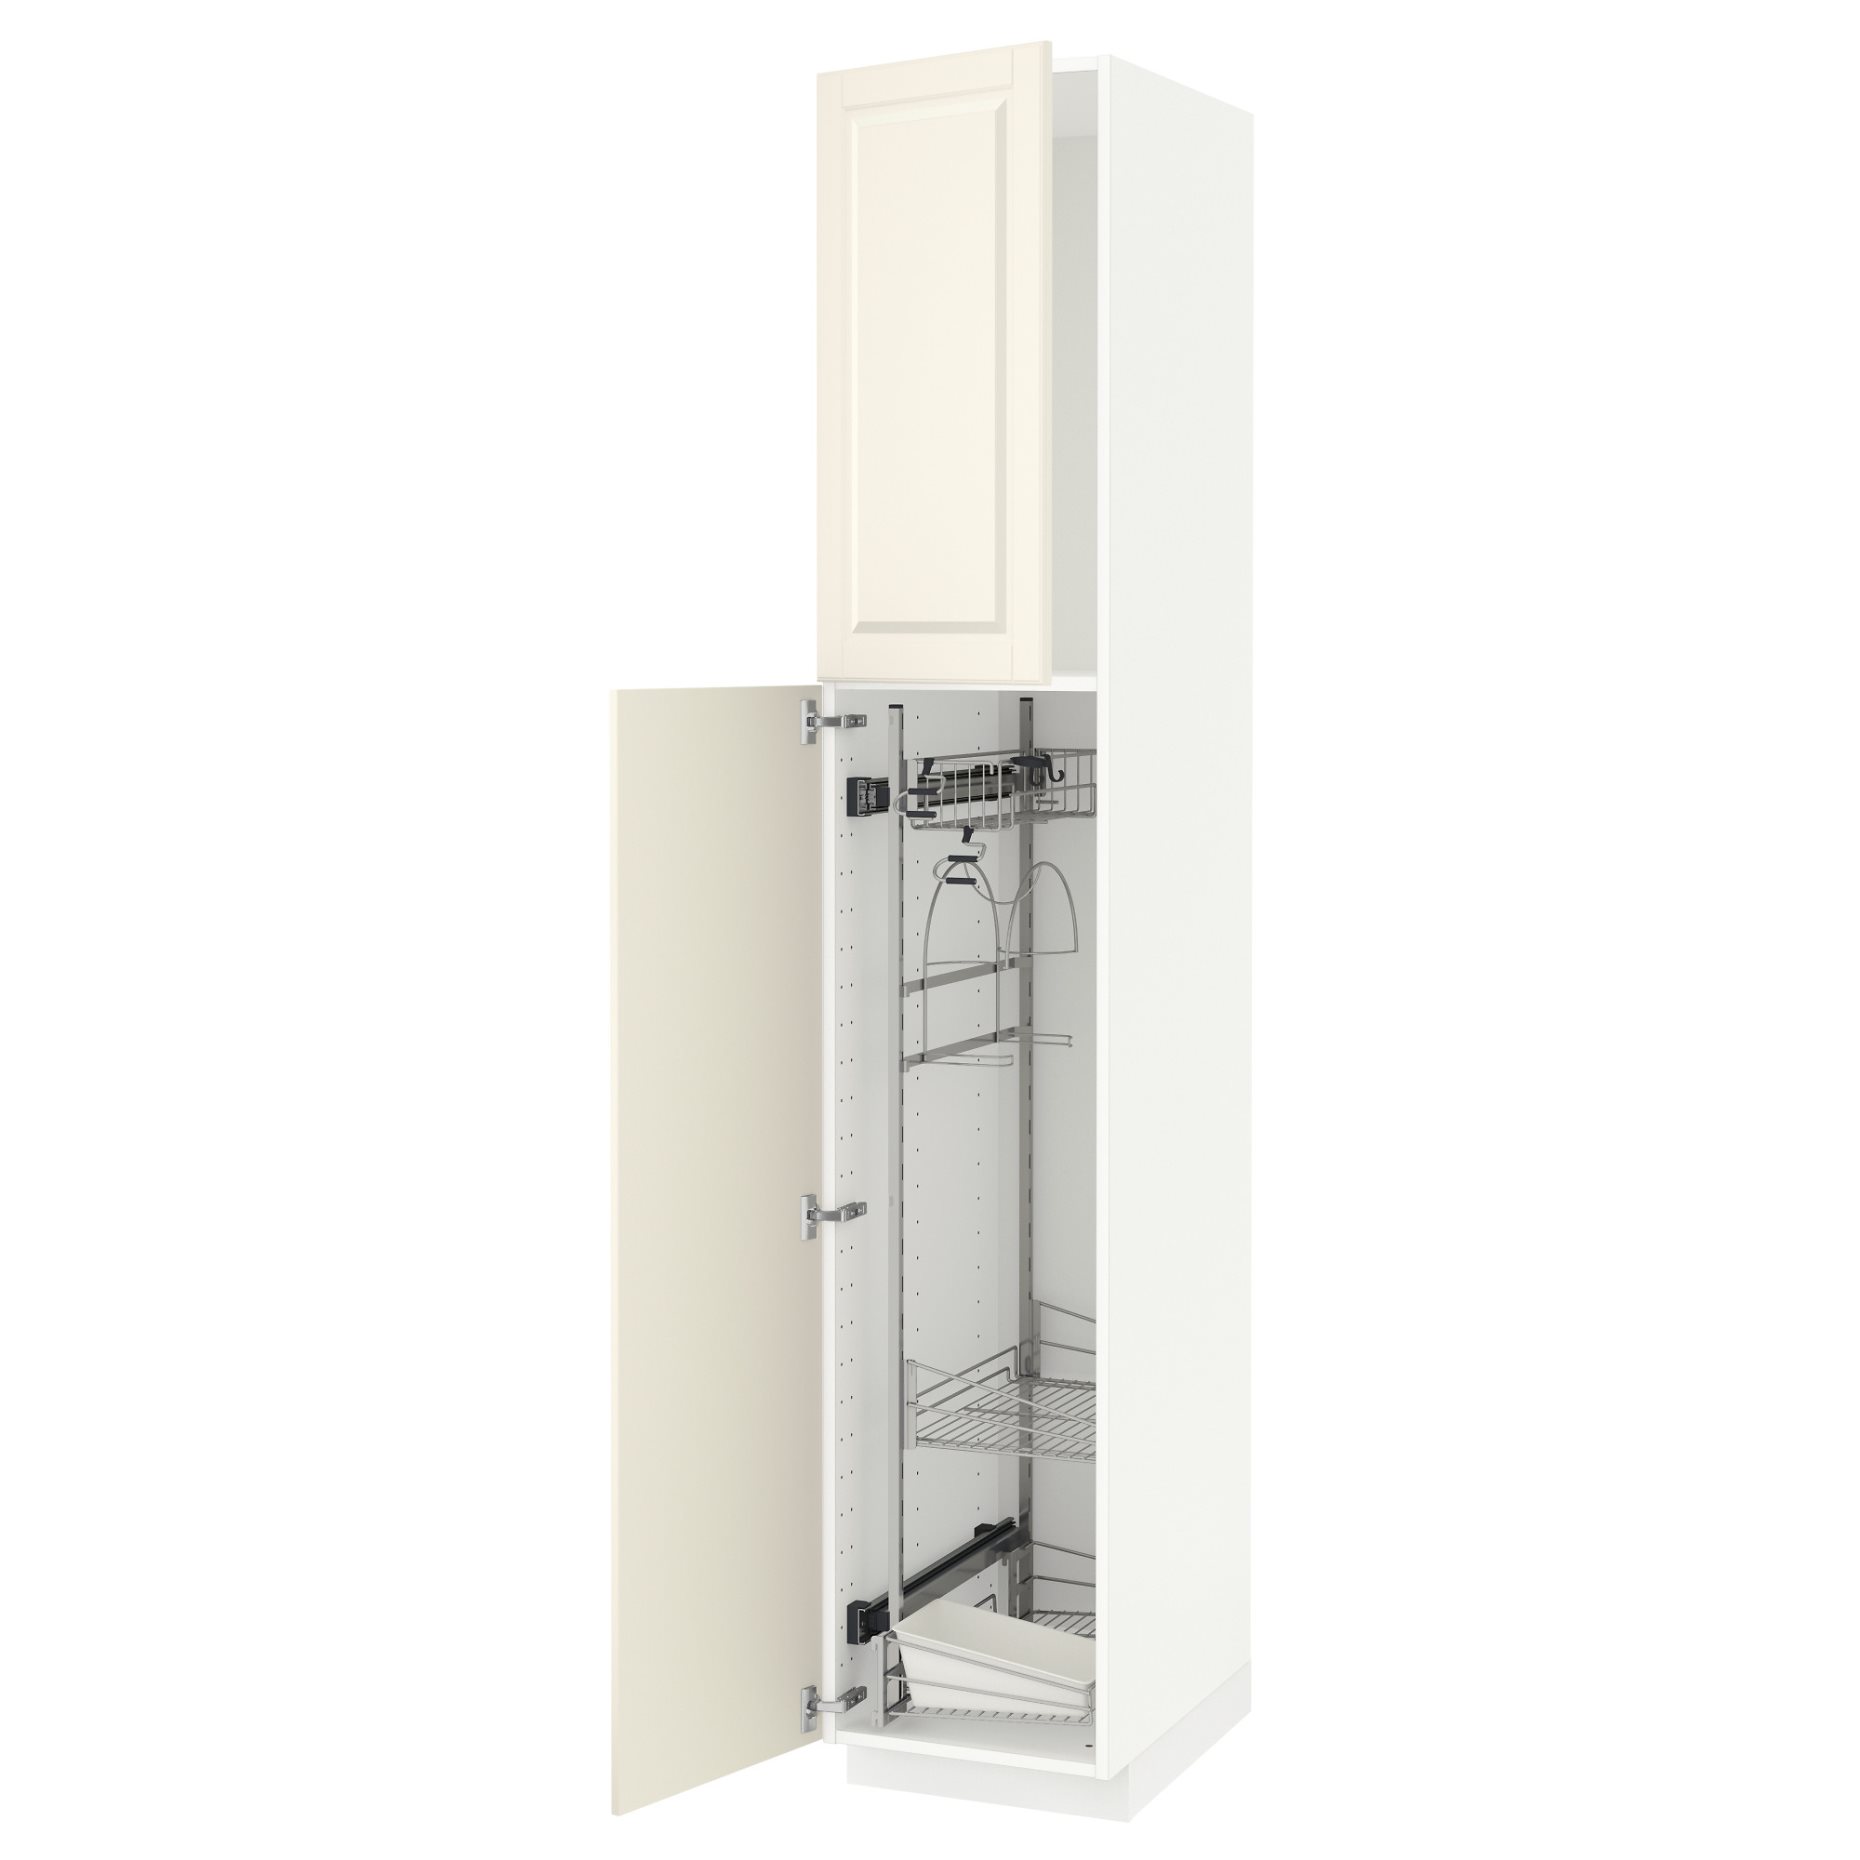 METOD, ψηλό ντουλάπι με εσωτερικά εξάρτηματα για τα είδη καθαρισμού, 40x60x220 cm, 094.541.95